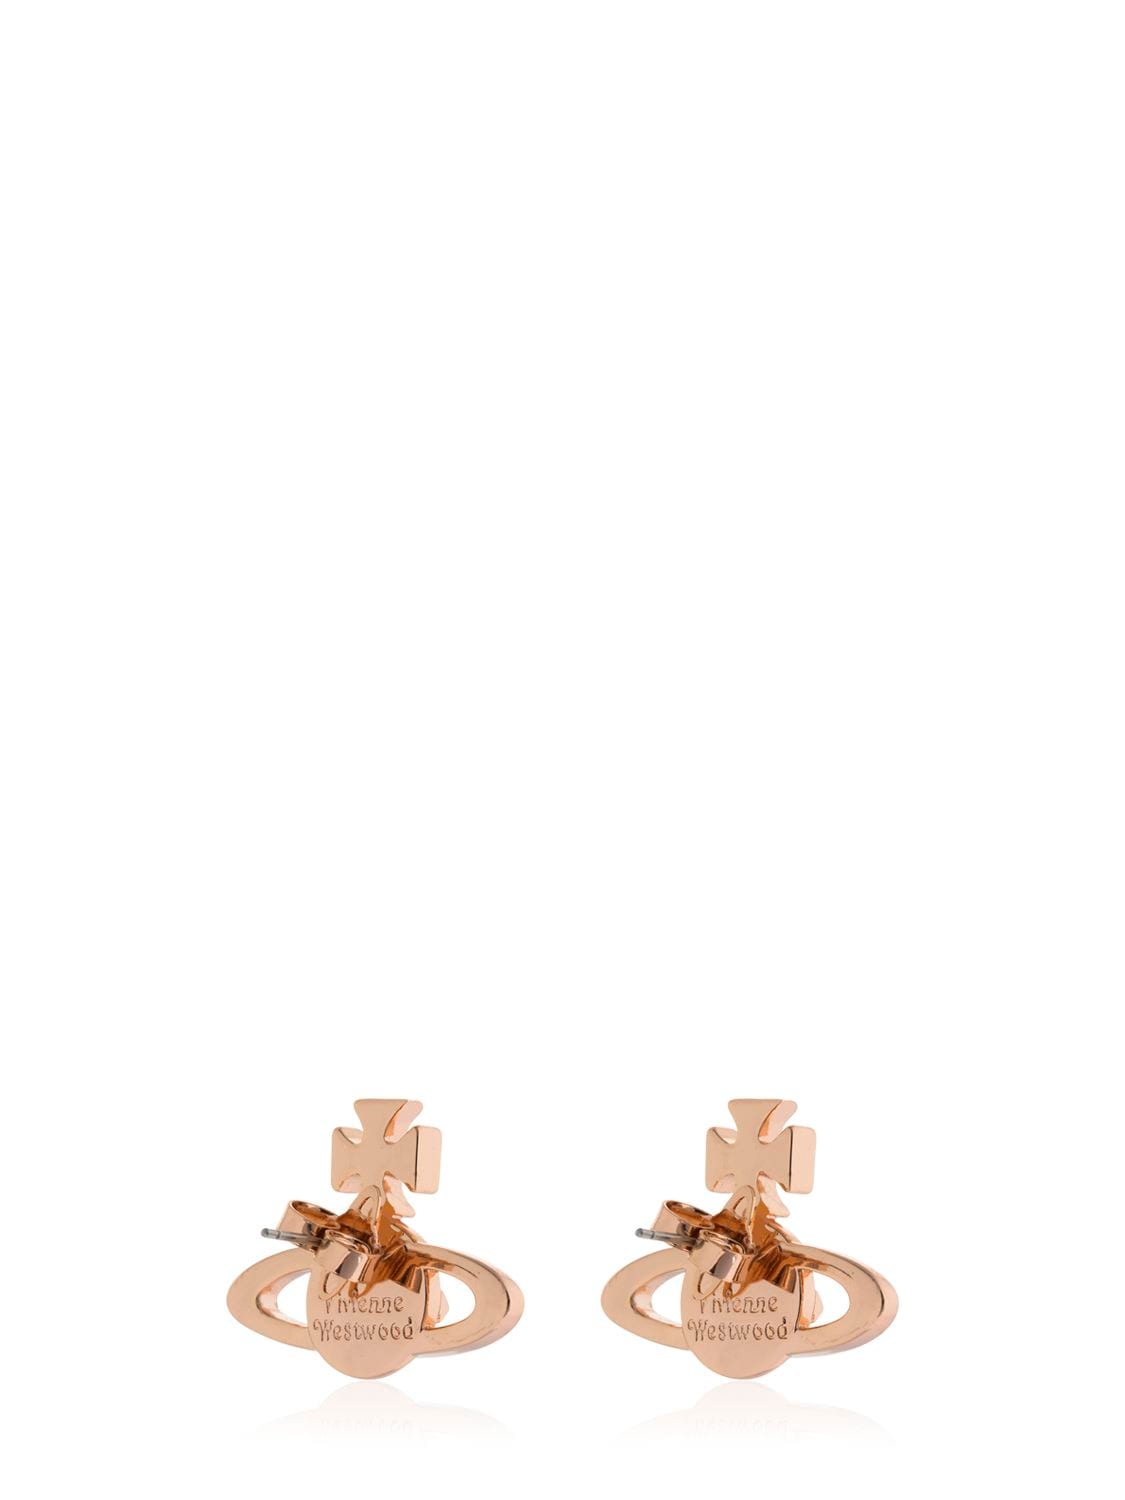 Shop Vivienne Westwood Mayfair Bas Relief Stud Earrings In Rose Gold